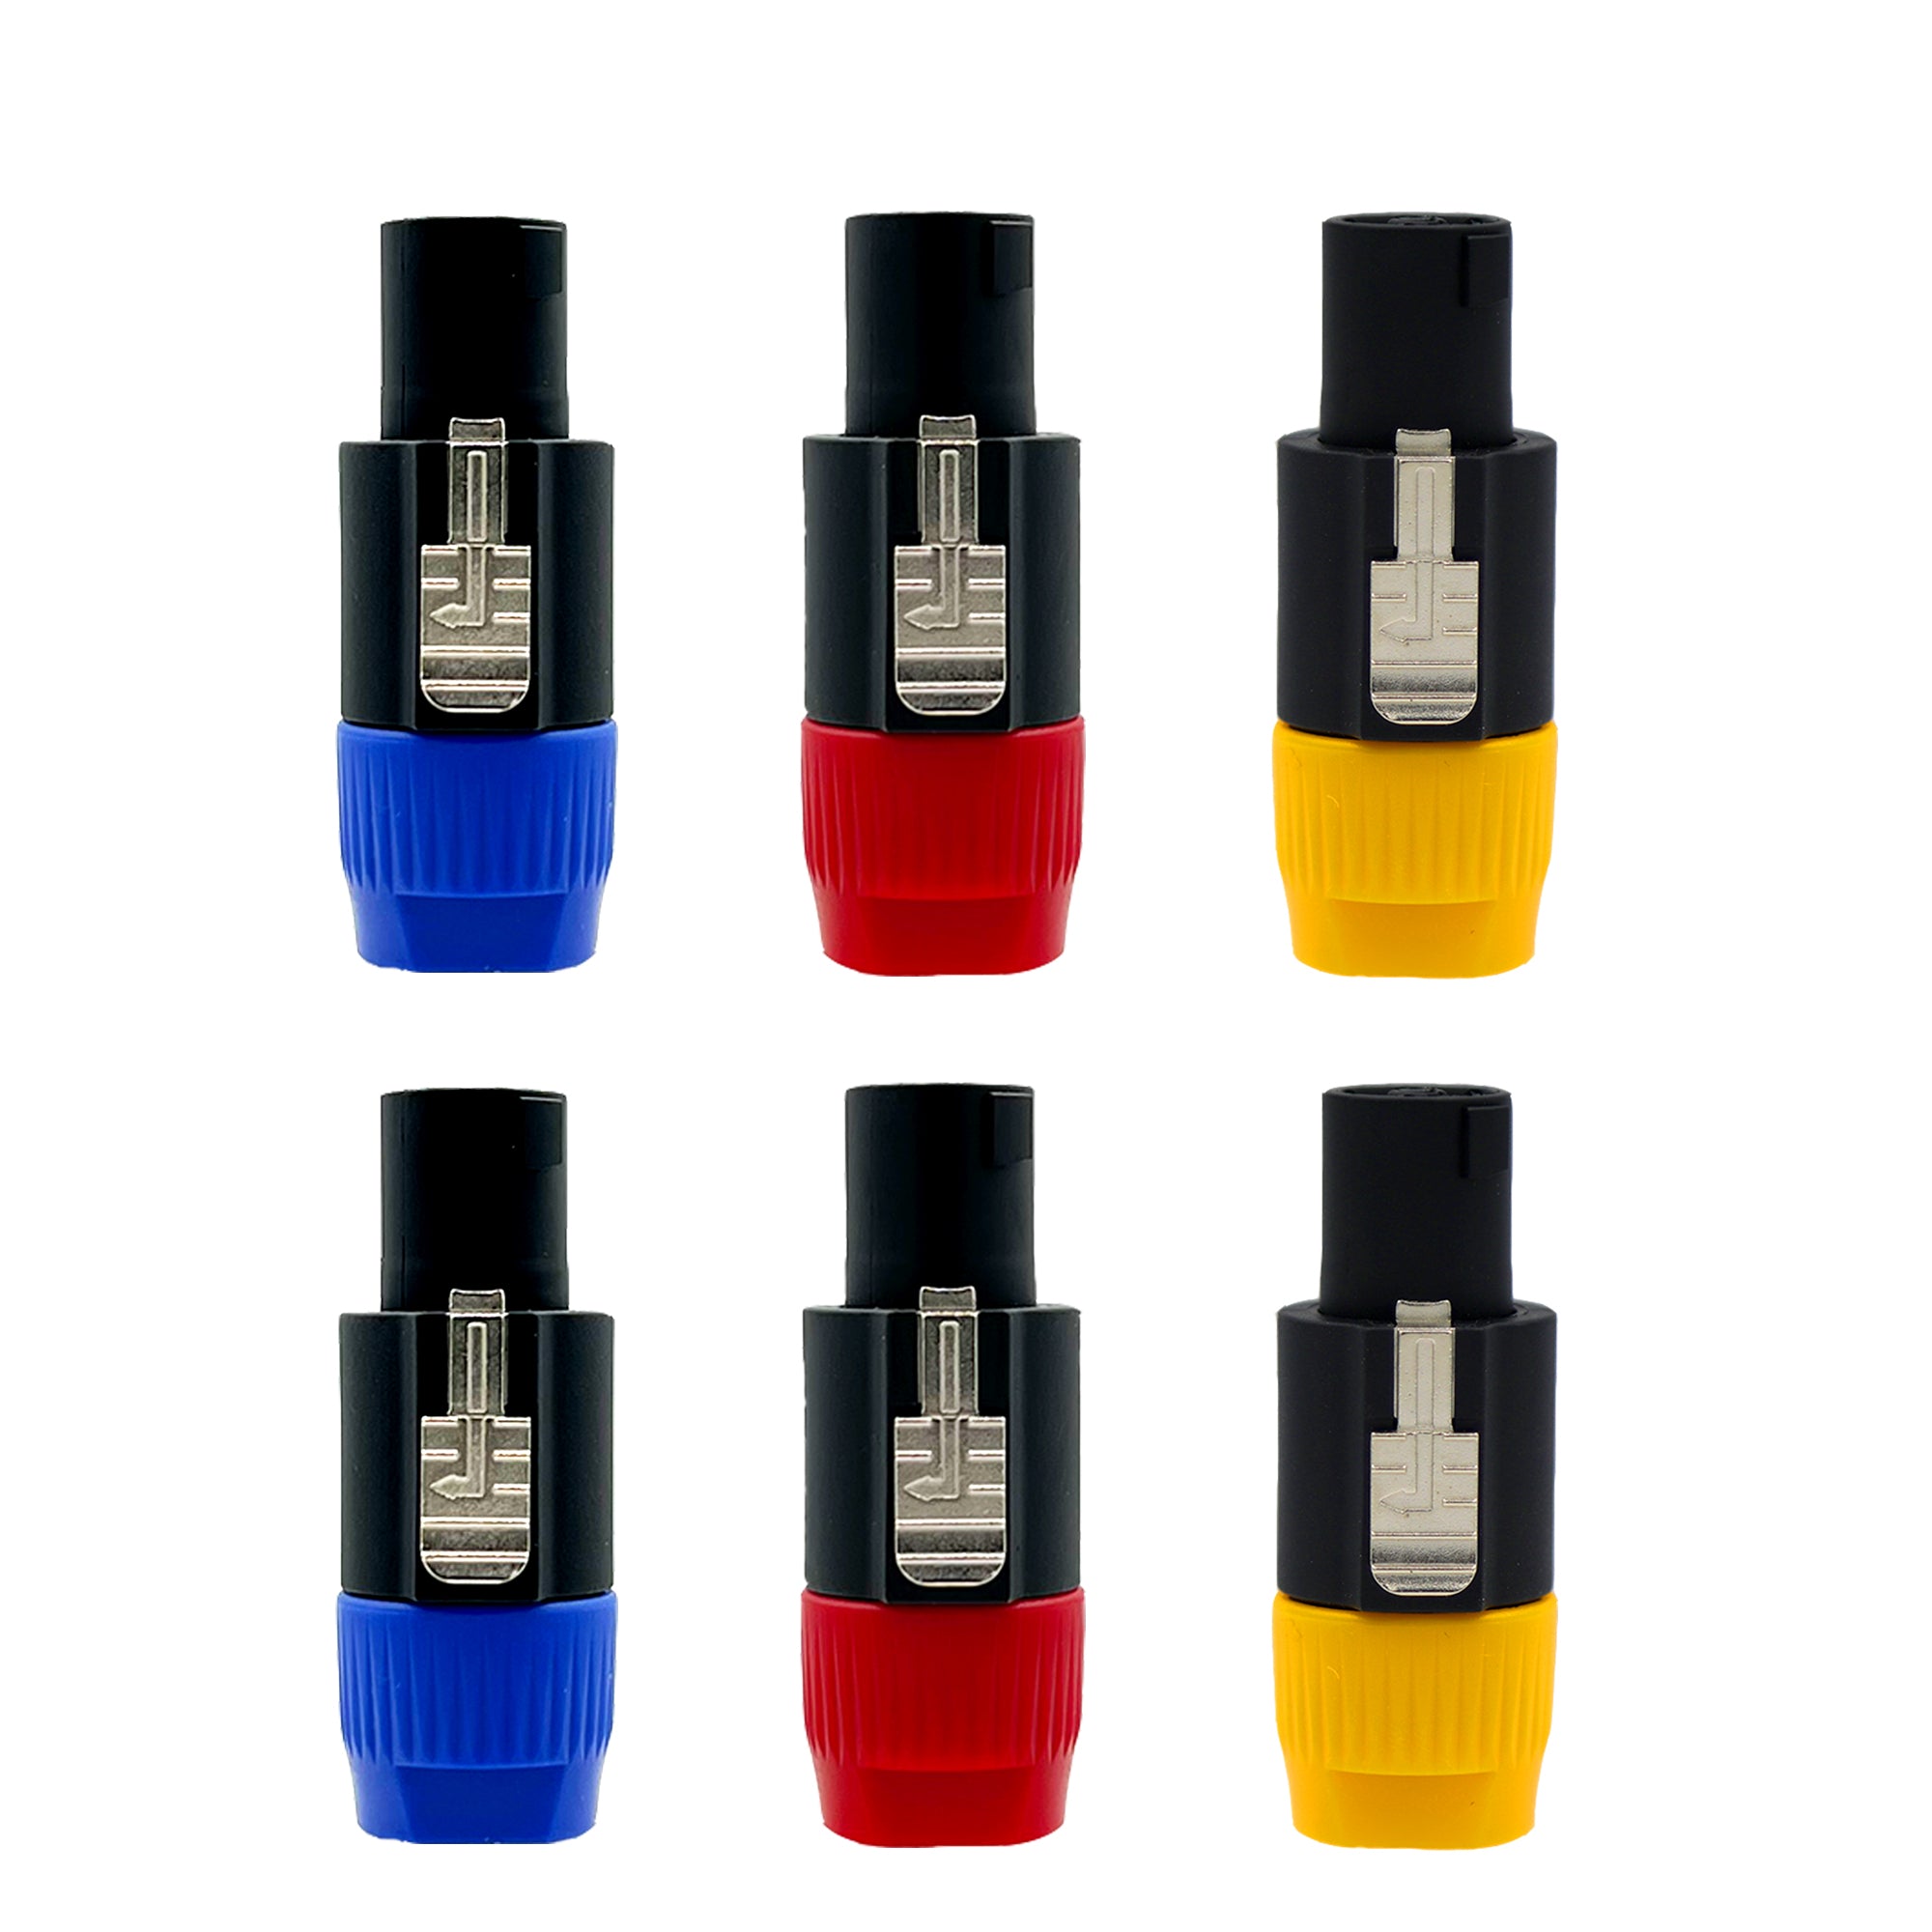 5 Core Speakon Adapter Connectors 4 Pole Plug Twist Lock | 2x Blue, 2x Red, 2x Yellow 6 Pack- SPKN BRY 6PK